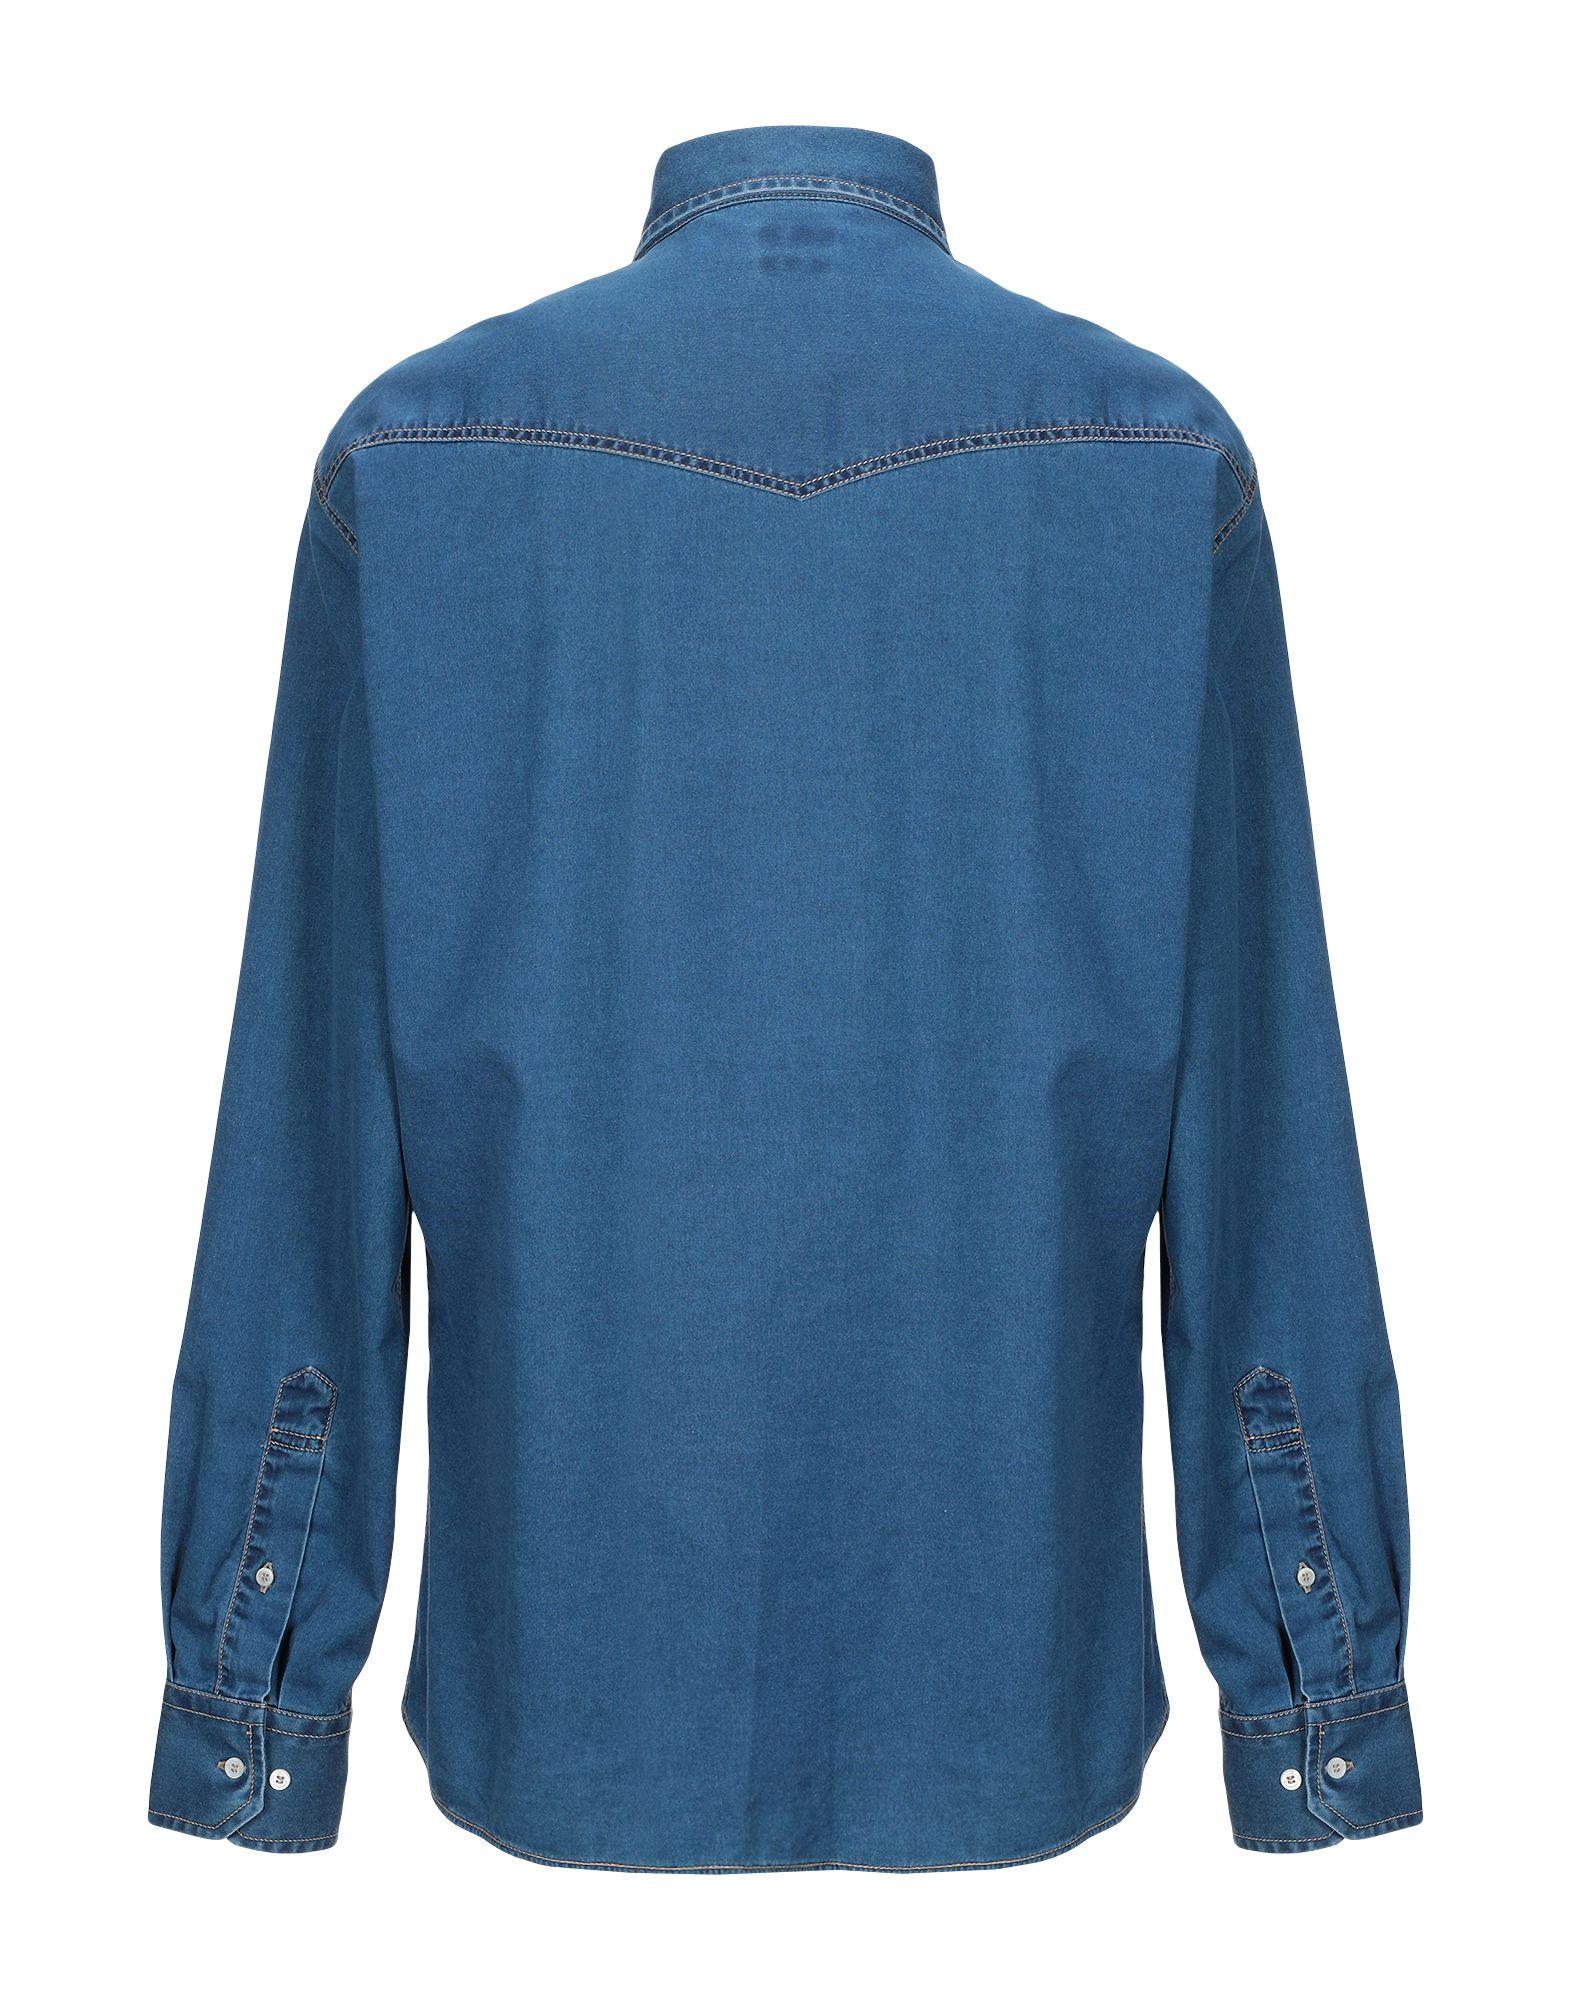 Brunello Cucinelli Denim Shirt in Blue for Men - Lyst